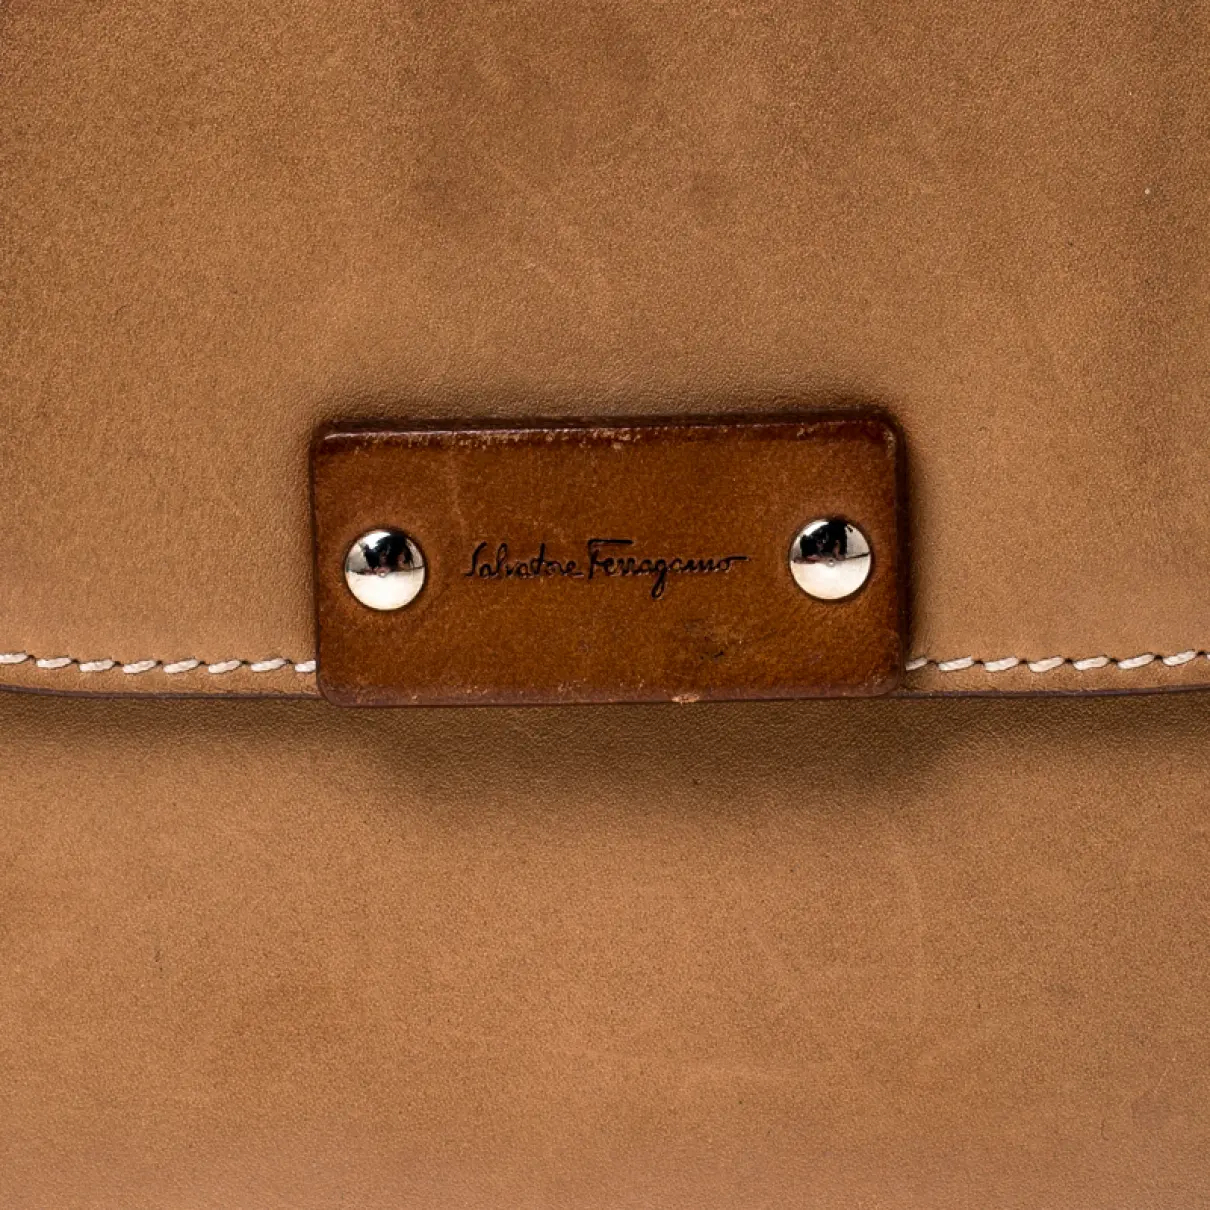 Leather purse Salvatore Ferragamo